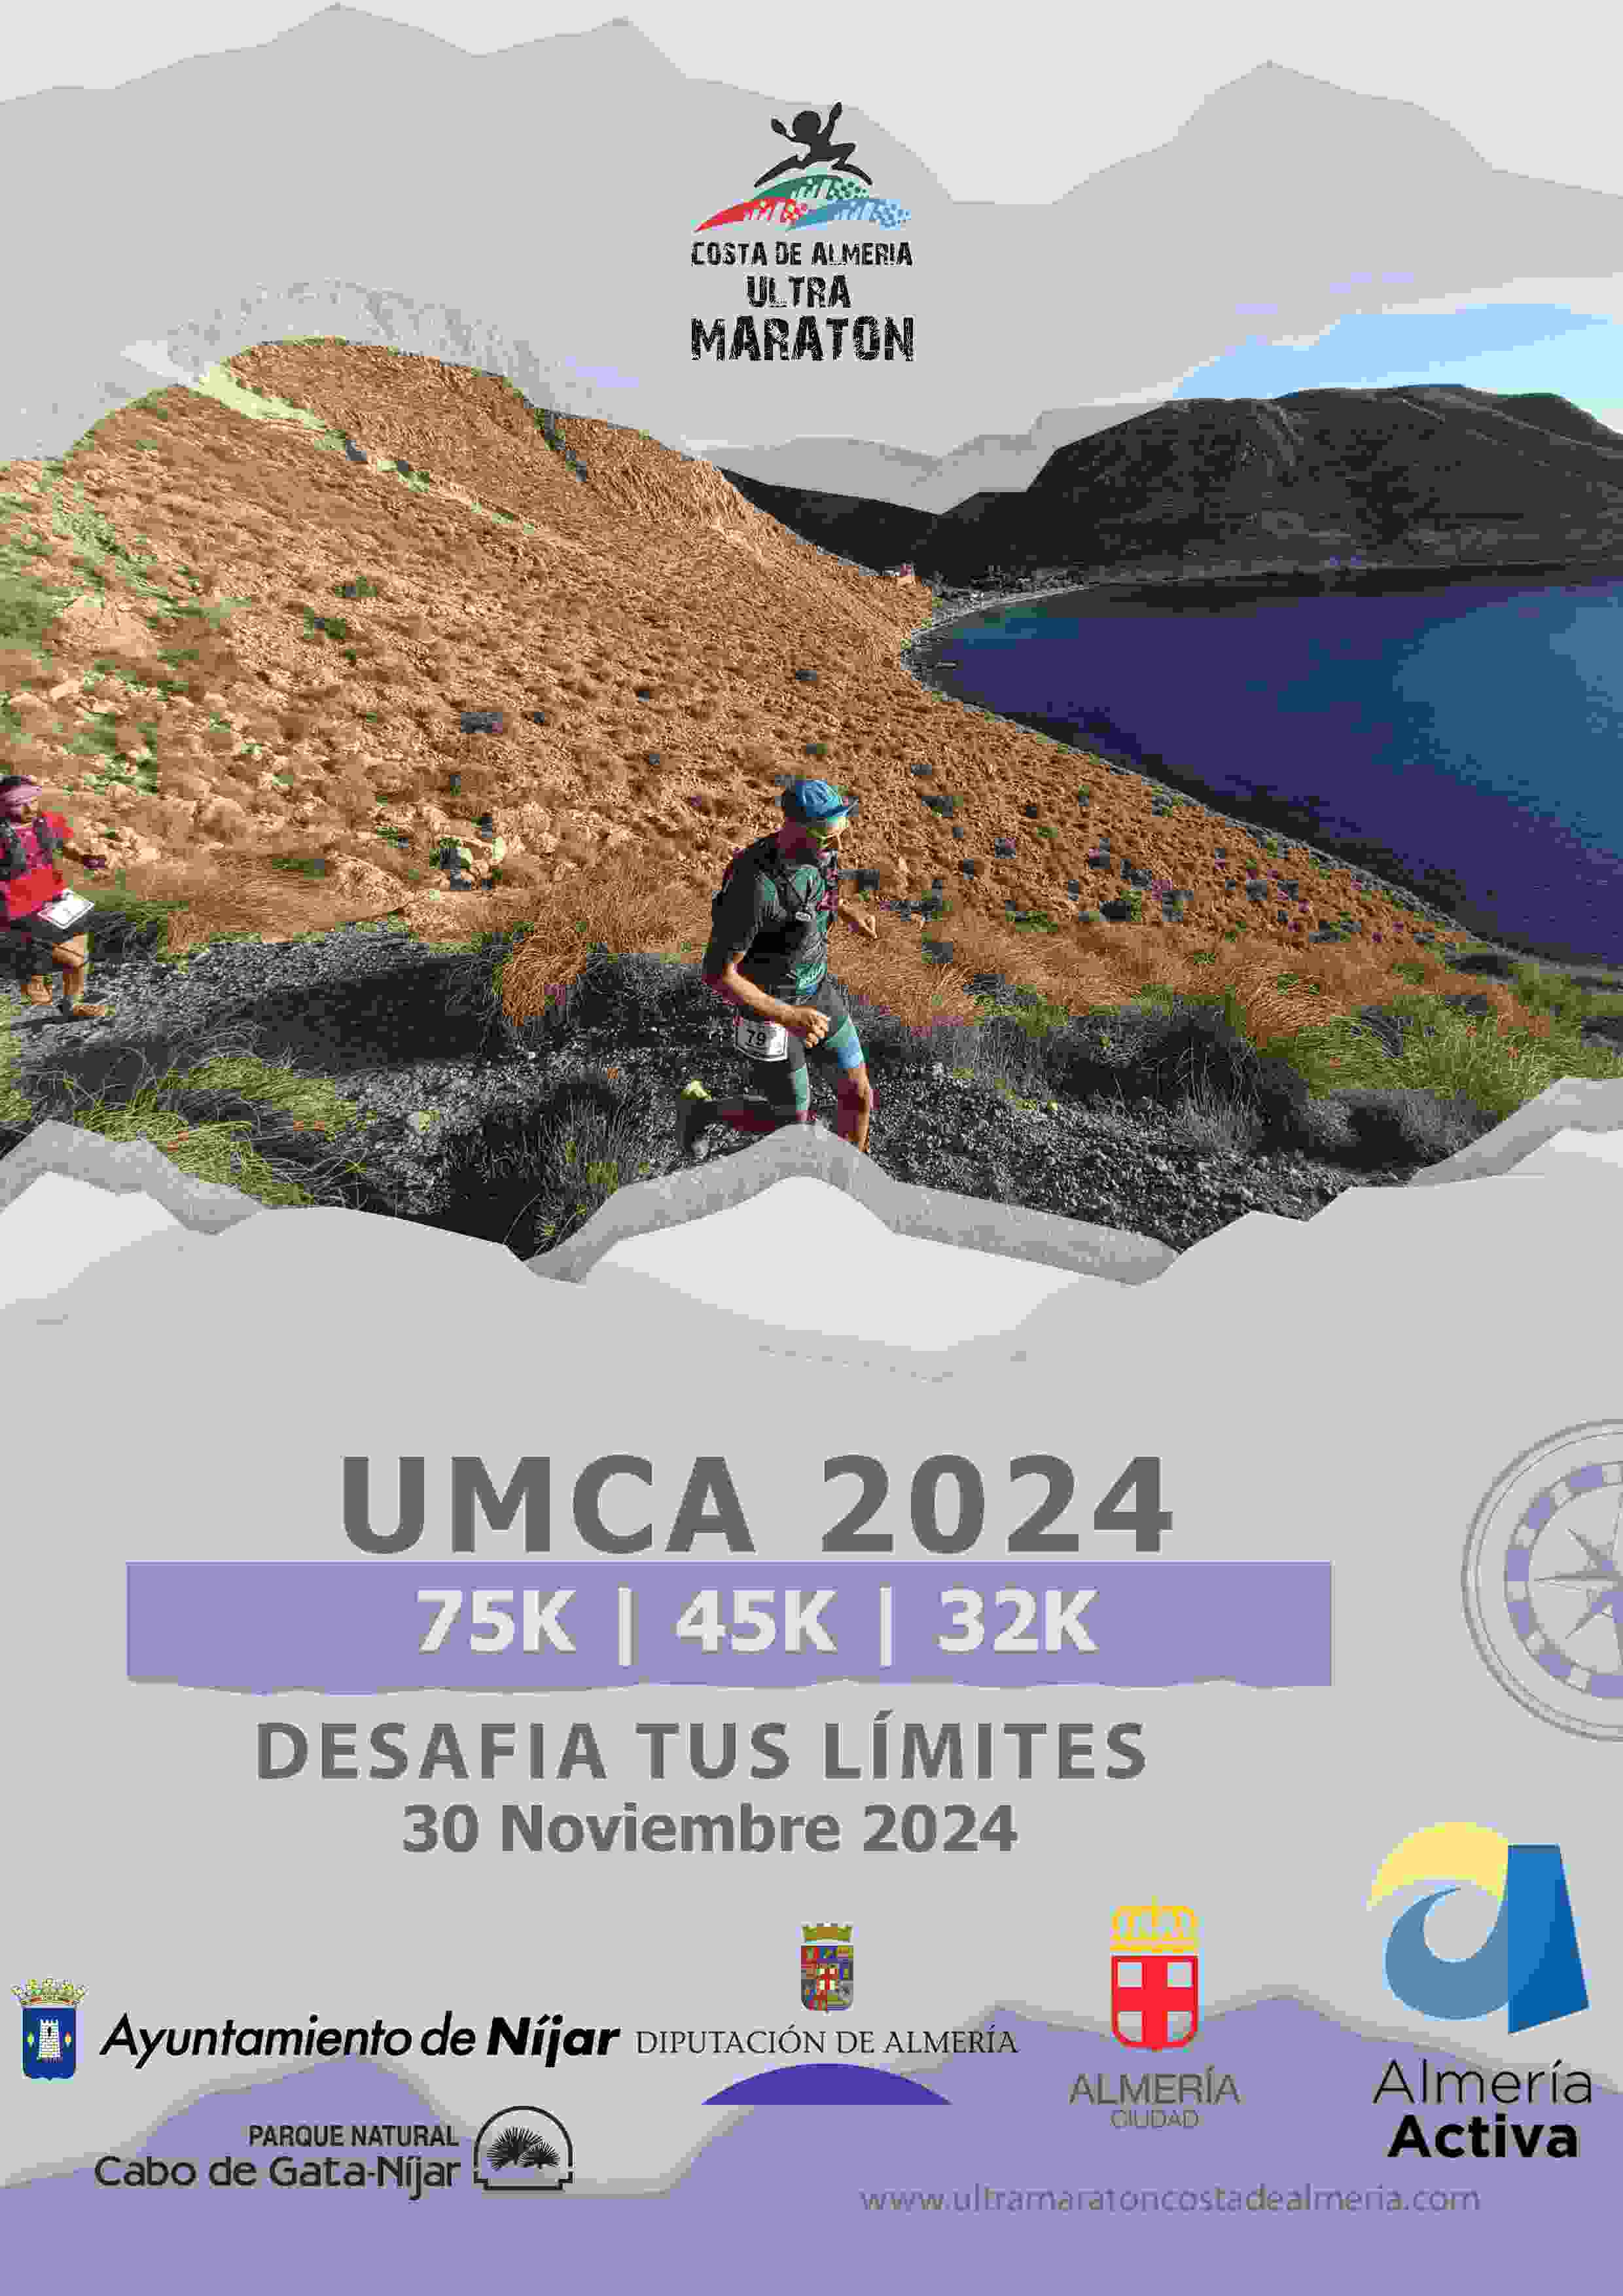 ULTRA MARATON COSTA DE ALMERIA 2024 - Register